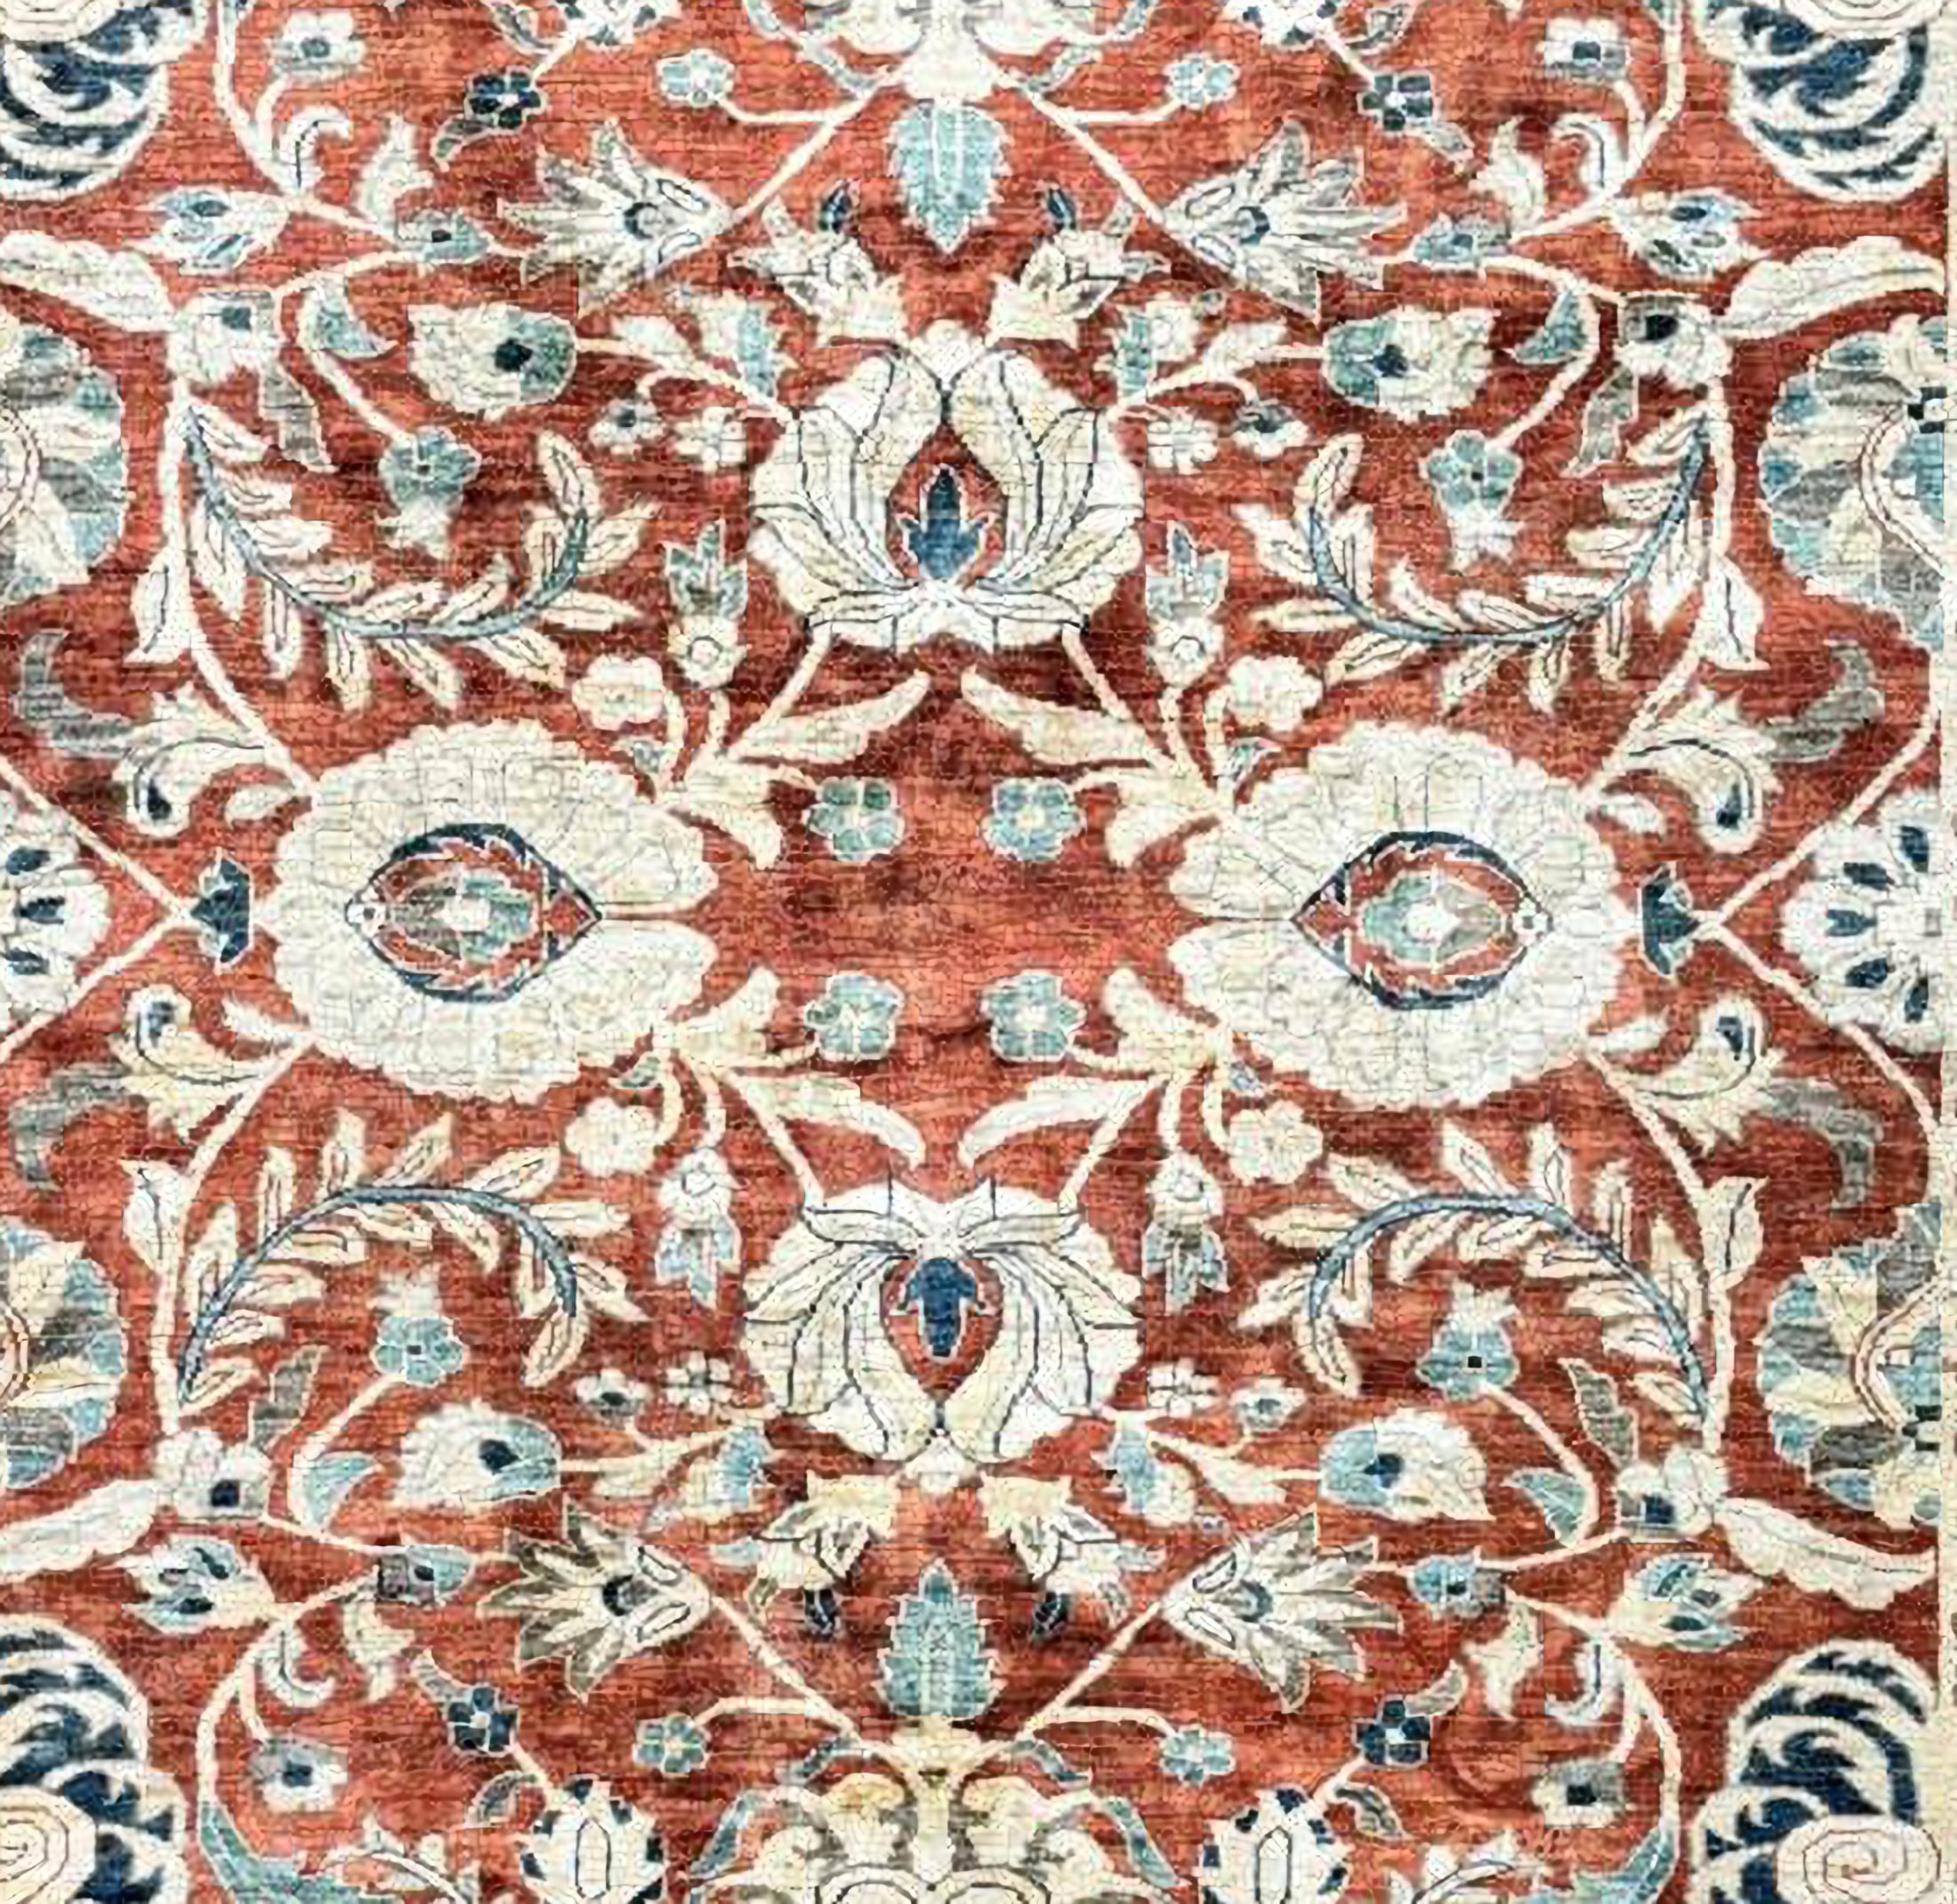 Magnifique tapis Ziegler en laine du 20ème siècle
Très bon état.
Dimensions : 365 x 274 cm

Les tapis Ziegler s'inspirent du design des tapis persans classiques pour donner à chaque intérieur une touche antique. Contrairement à d'autres tapis